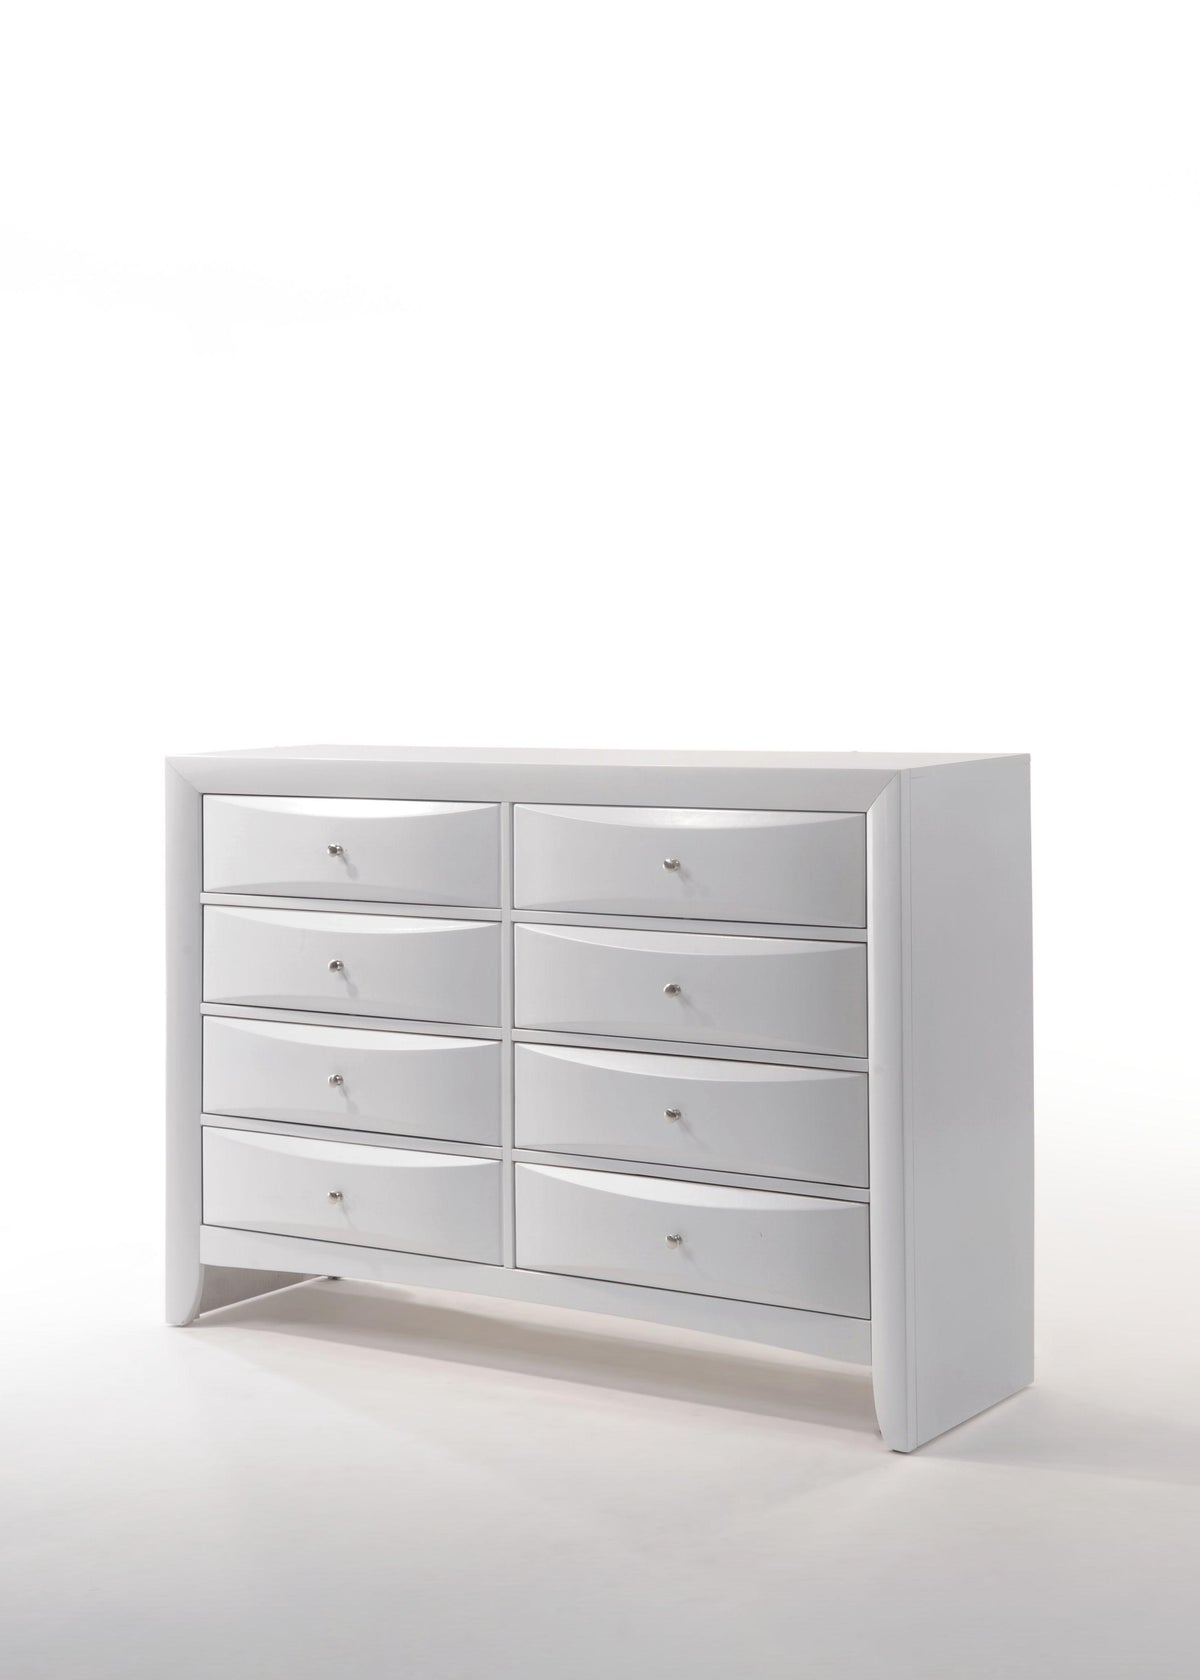 Ireland White Dresser  Half Price Furniture